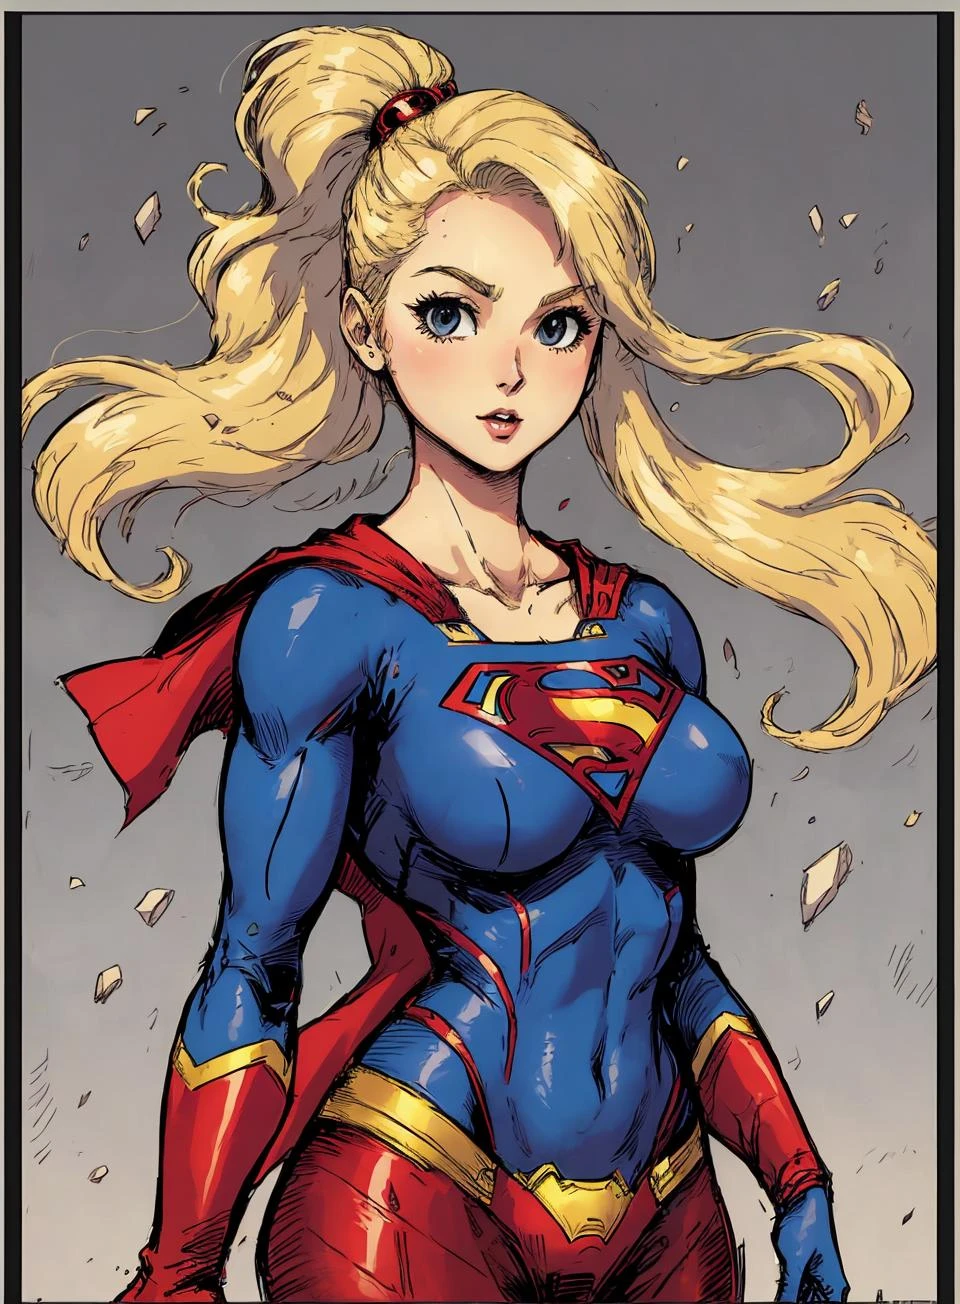 sorteio de uma supergirl,  com caixa de pilares,  borda cinza,
cabelo loiro,   lindo terno de super-herói, seios grandes,  cabelo longo,  Sozinho,
